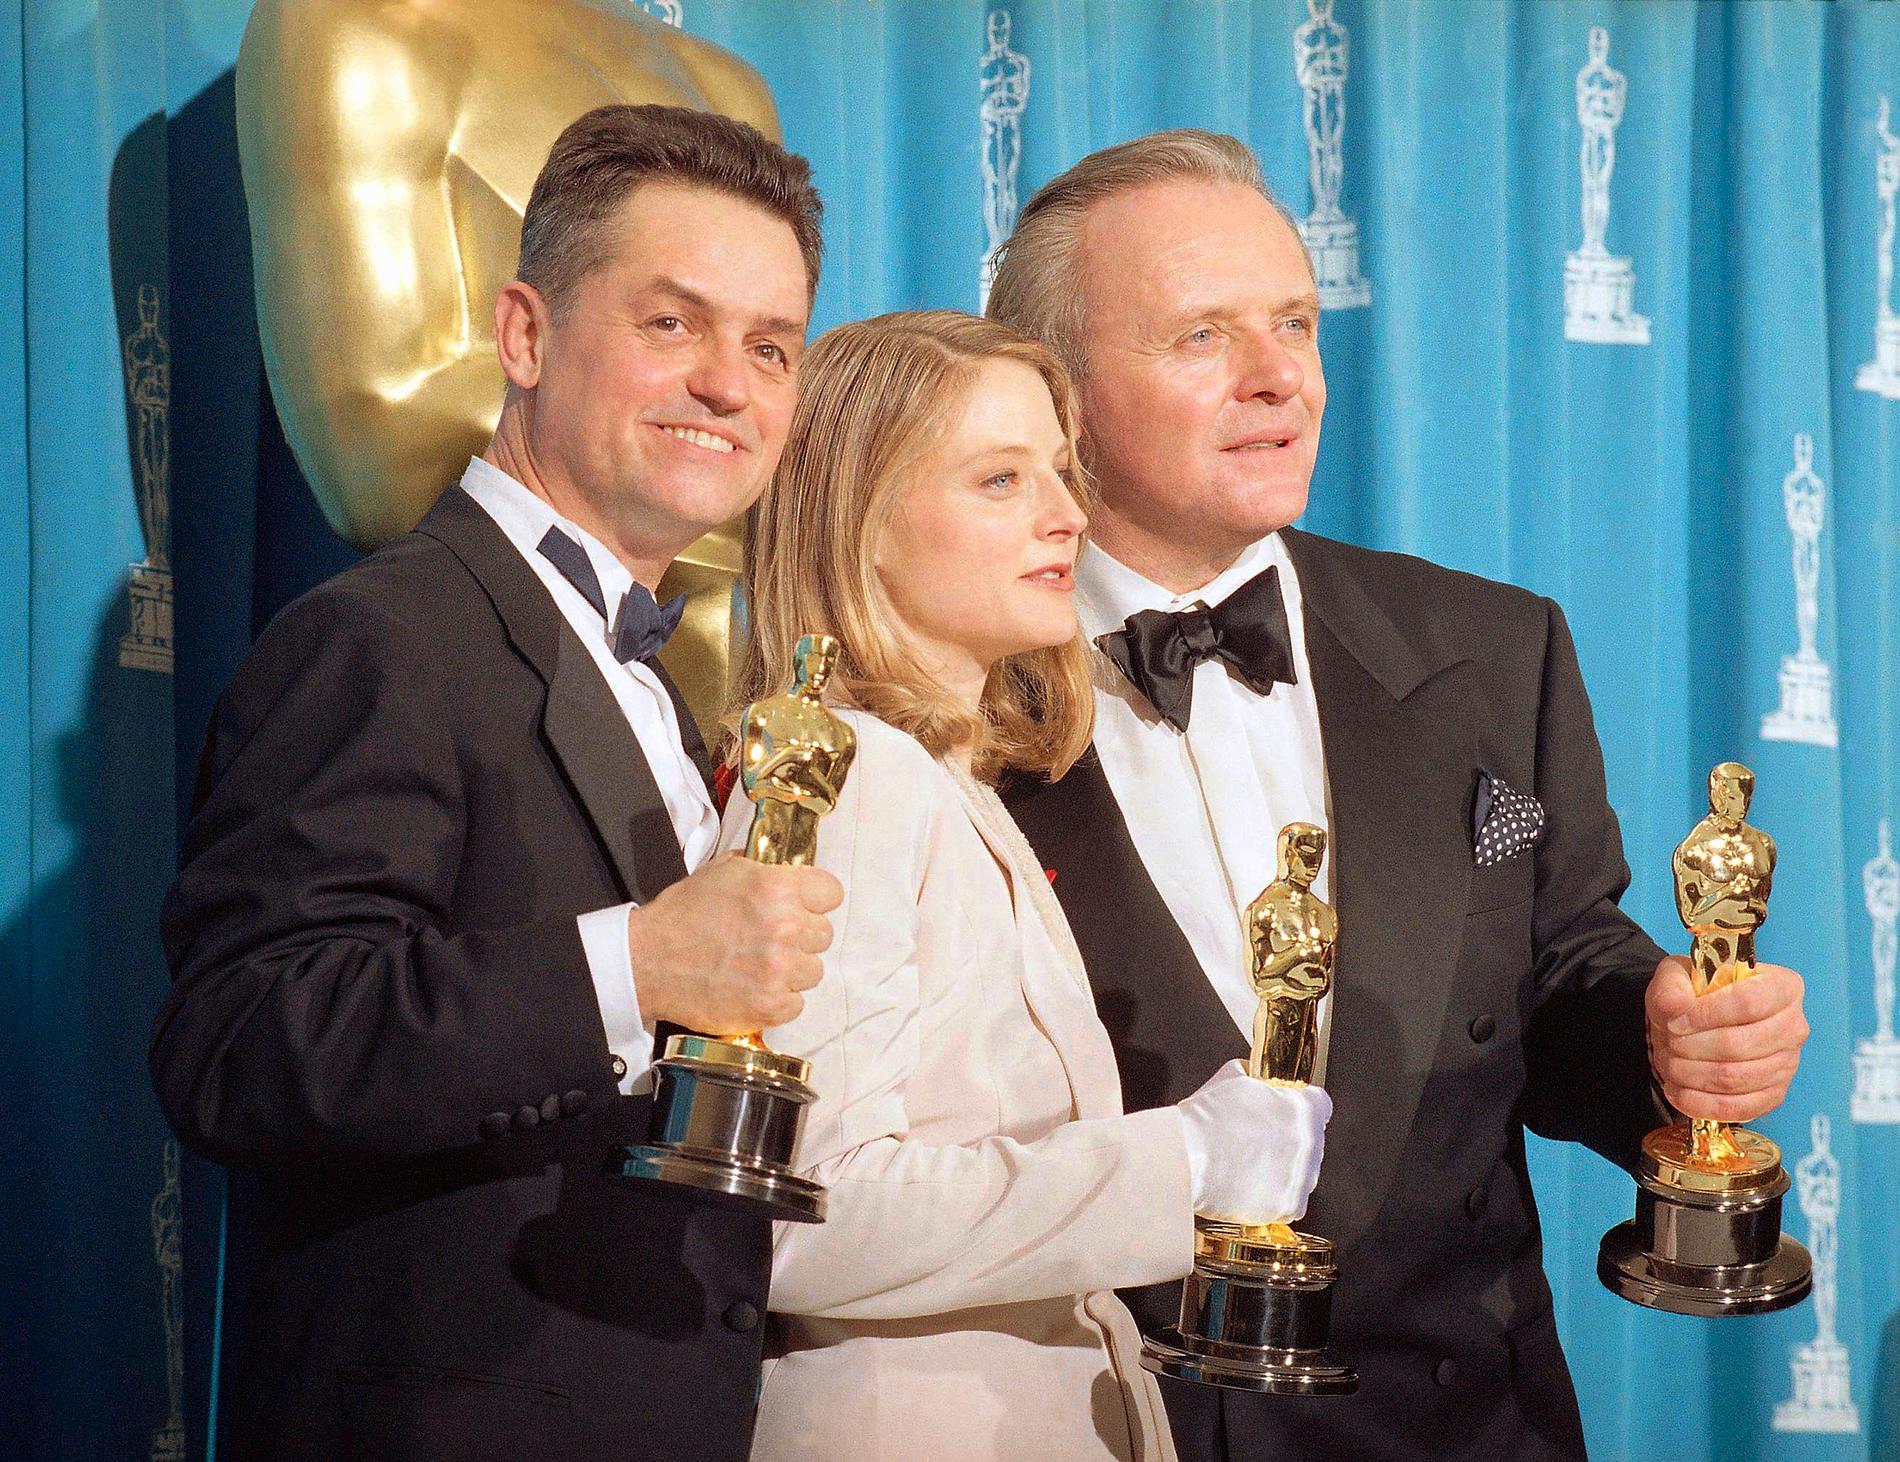 Från vänster: Regissören Jonathan Demme och huvudrollsinnehavarna Jodie Foster och Anthony Hopkins stoltserar med sina Oscarsstatyetter för bästa regissör, bästa kvinnliga skådespelare respektive bästa manliga skådespelare efter att "När lammen tystnar" dominerat prisutdelningen på Oscarsgalan 1992. Arkivbild.